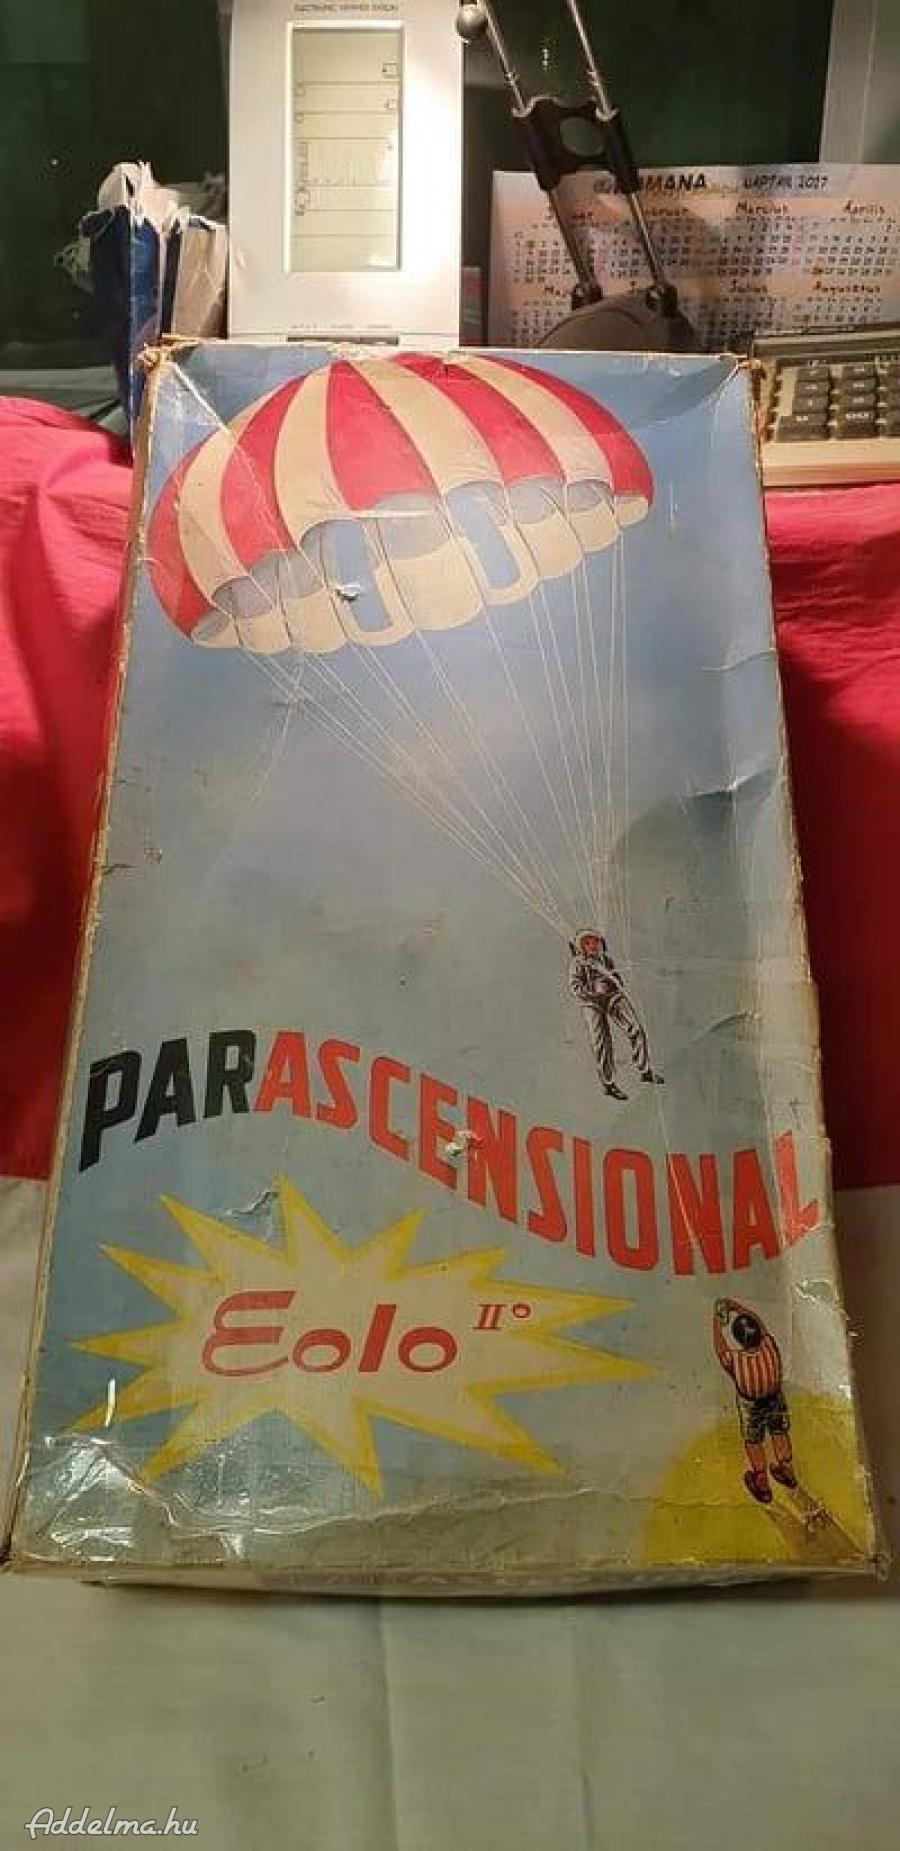 Parascensional Eolo II retró ejtőernyős papírsárkány